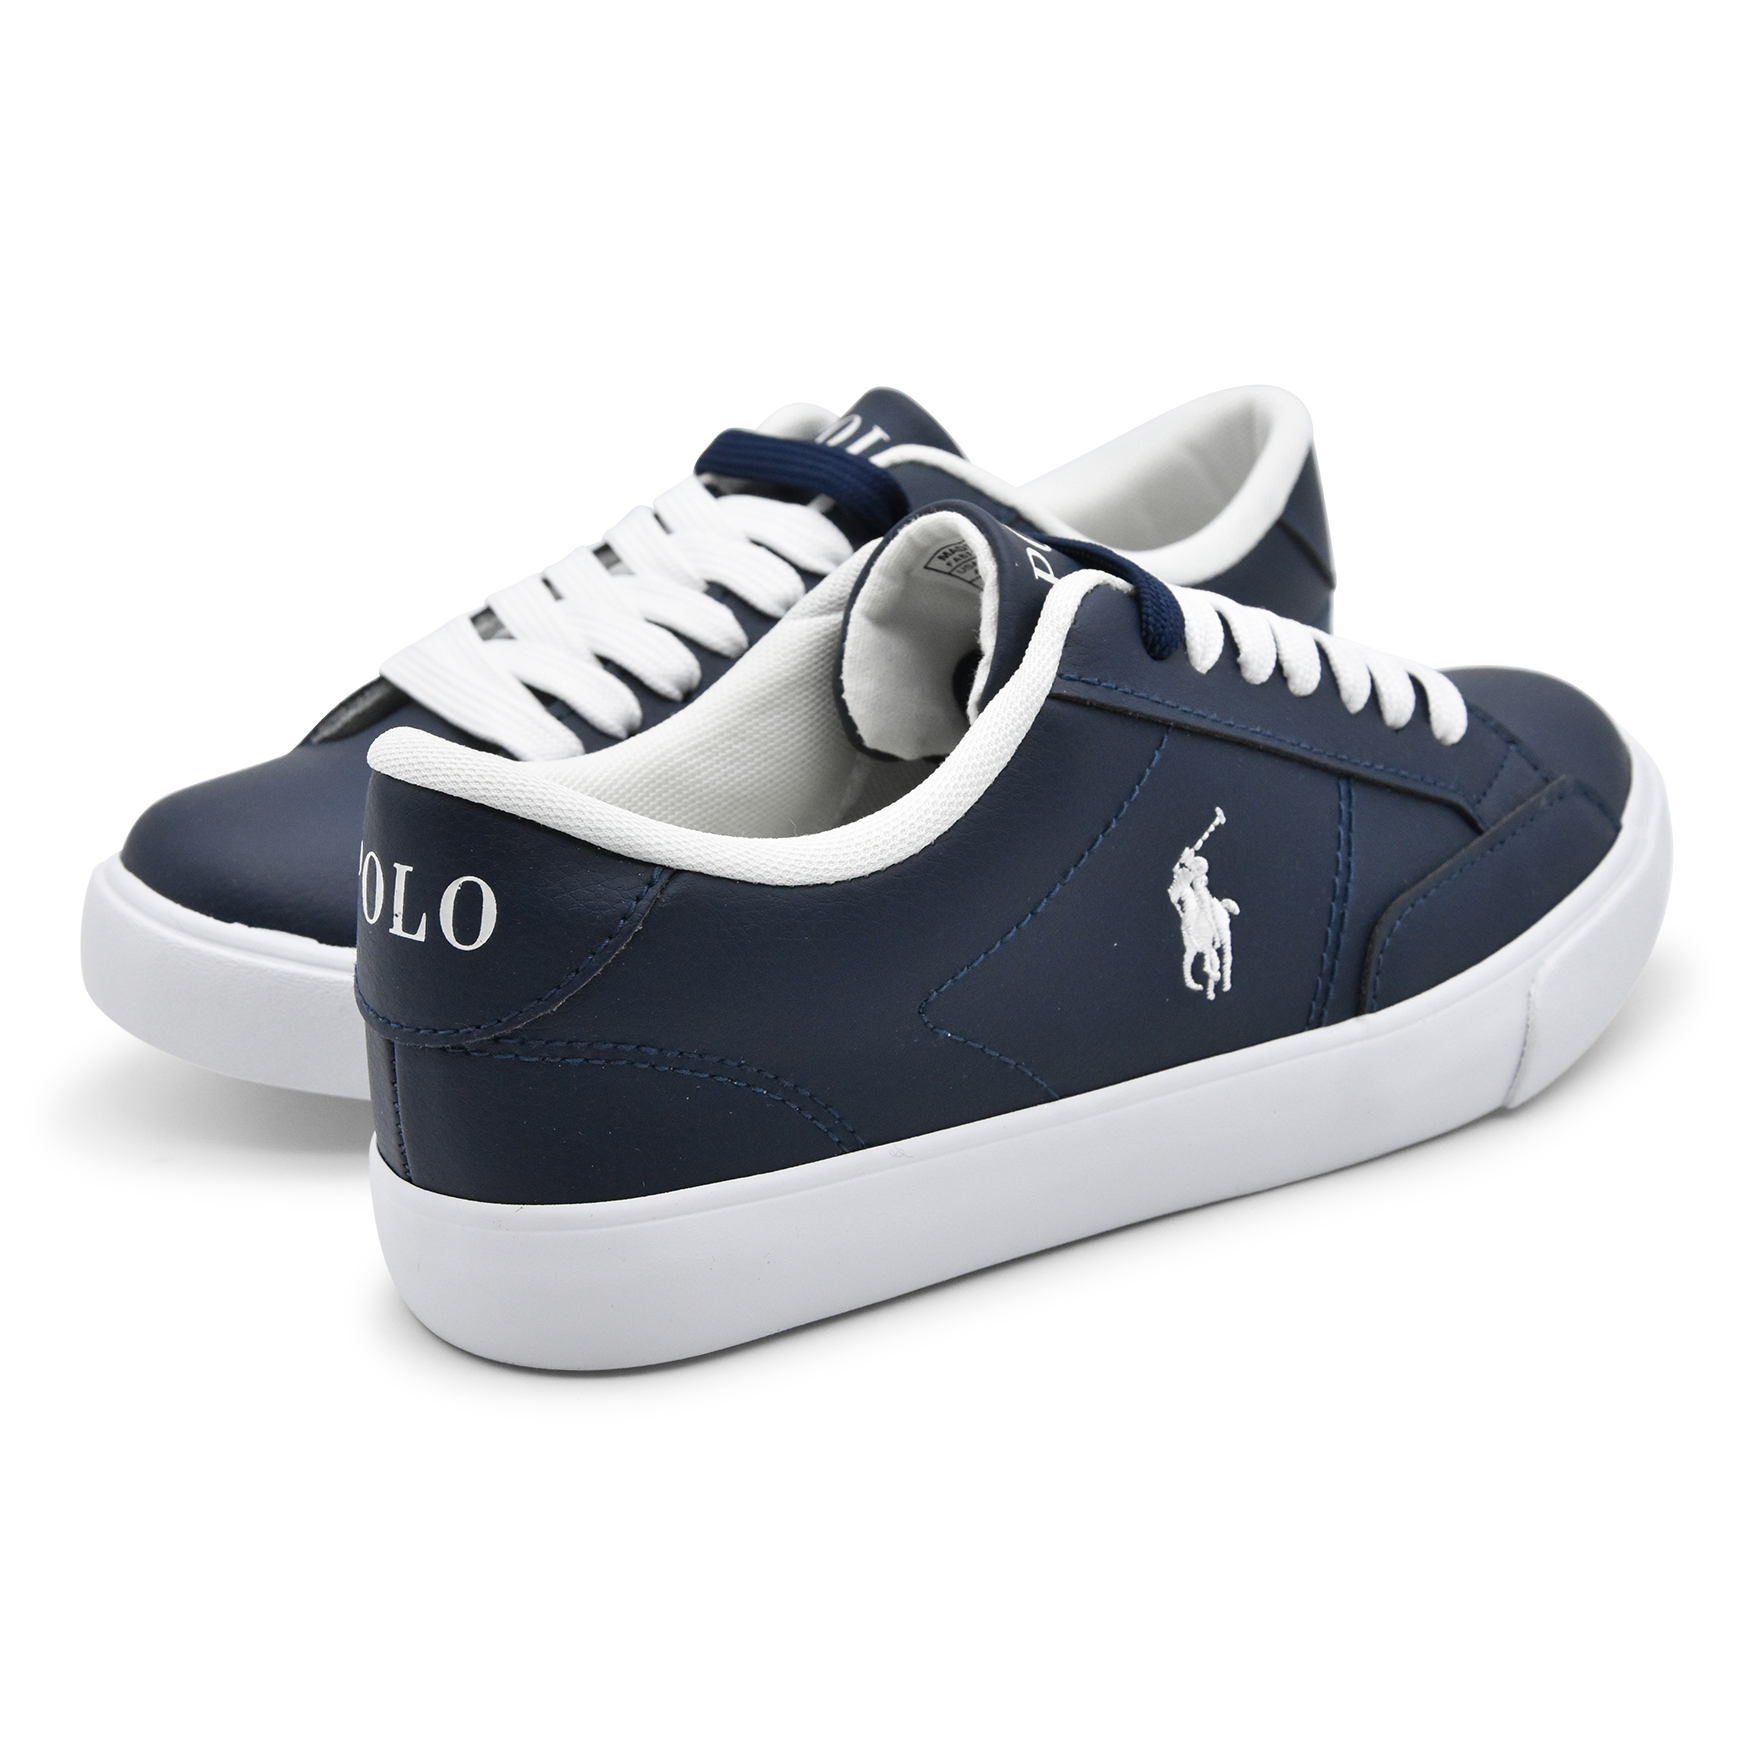 Polo Ralph Lauren, sneakers, pelle, blu, lacci, retro